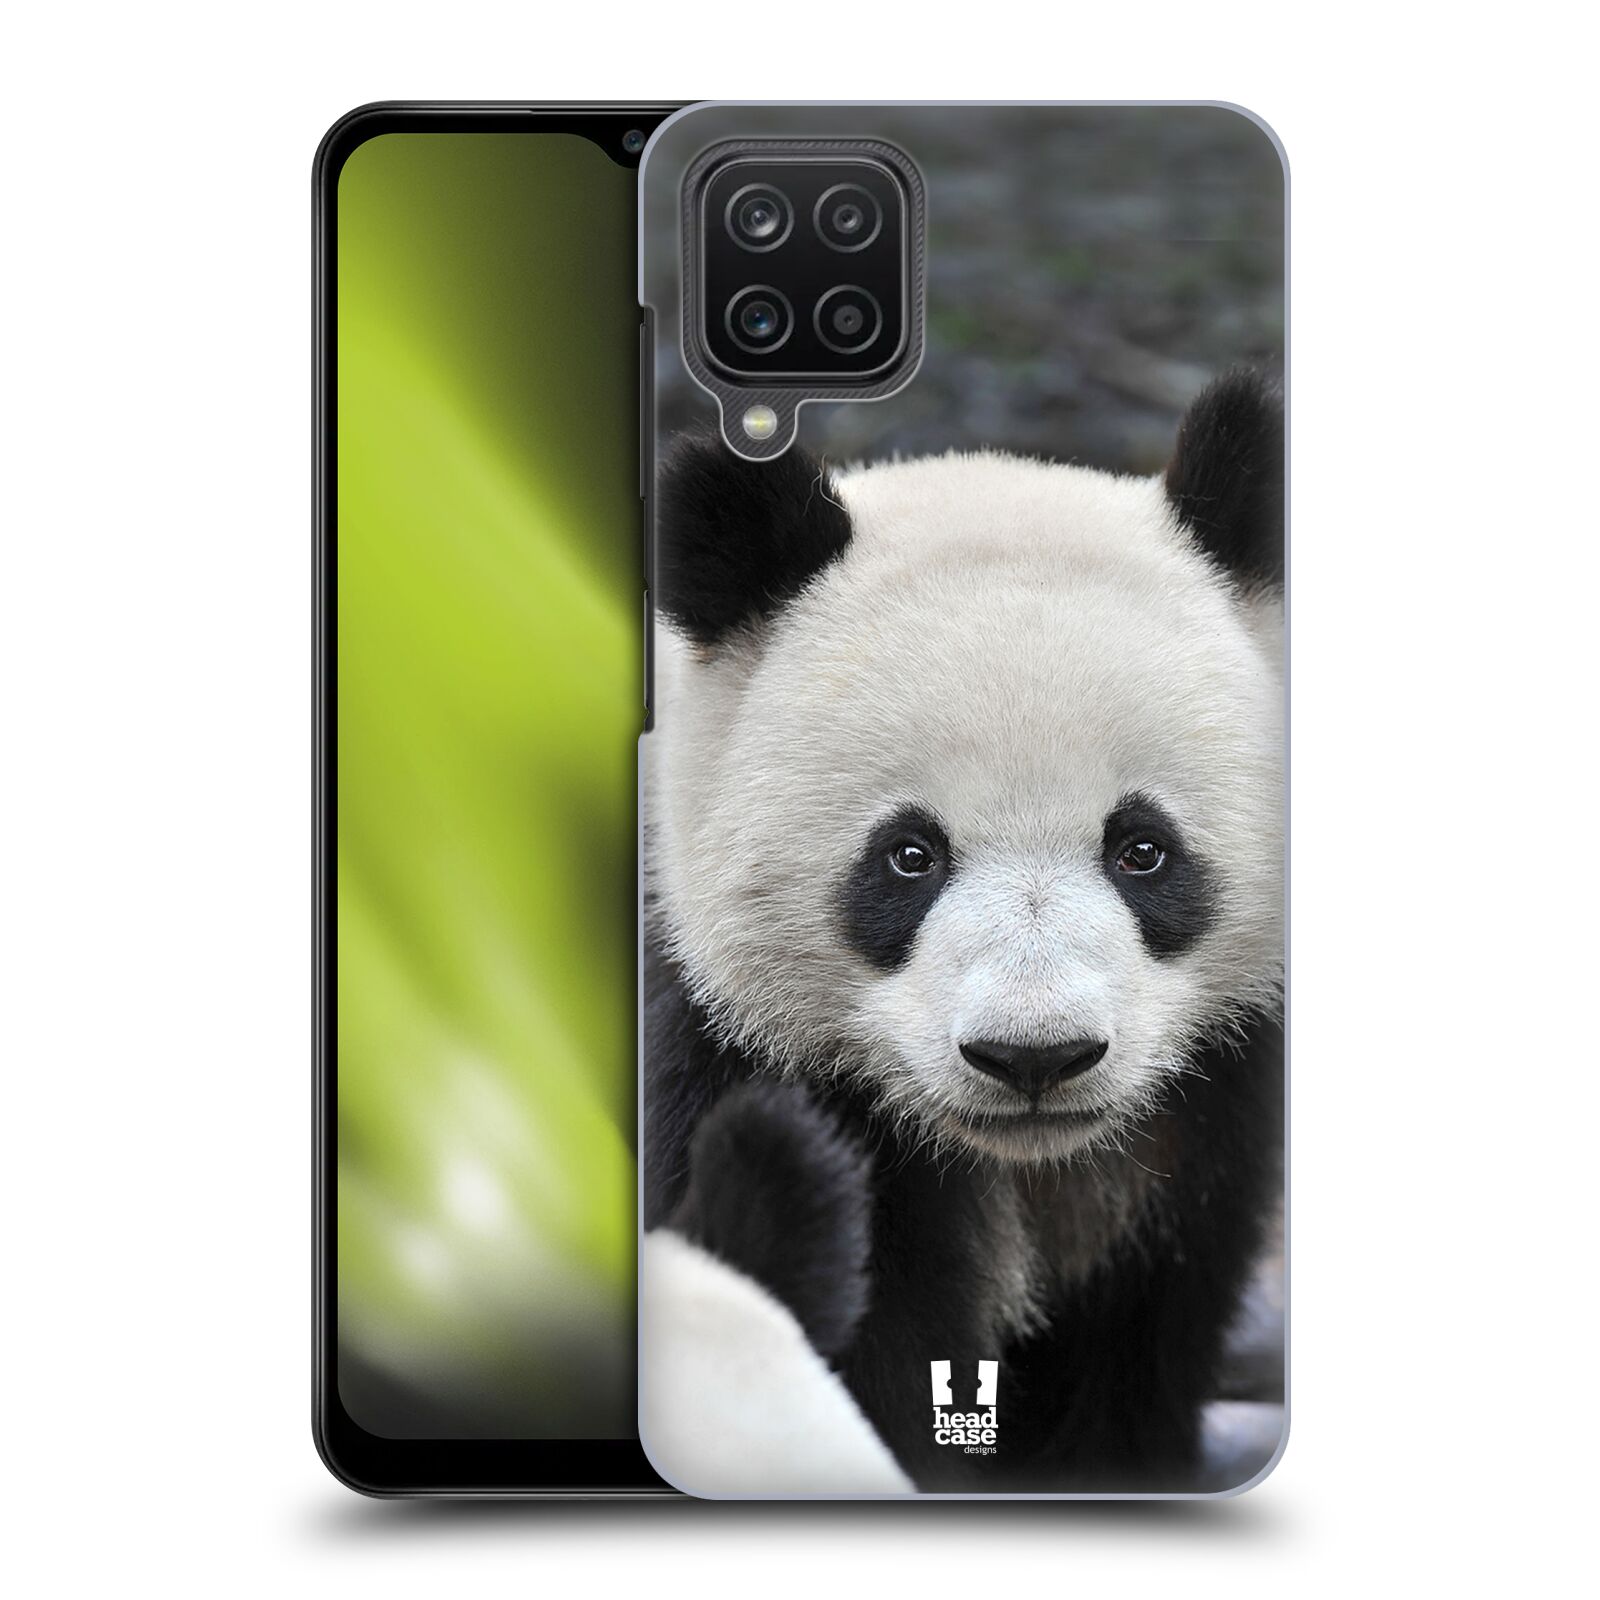 Zadní obal pro mobil Samsung Galaxy A12 - HEAD CASE - Svět zvířat medvěd panda